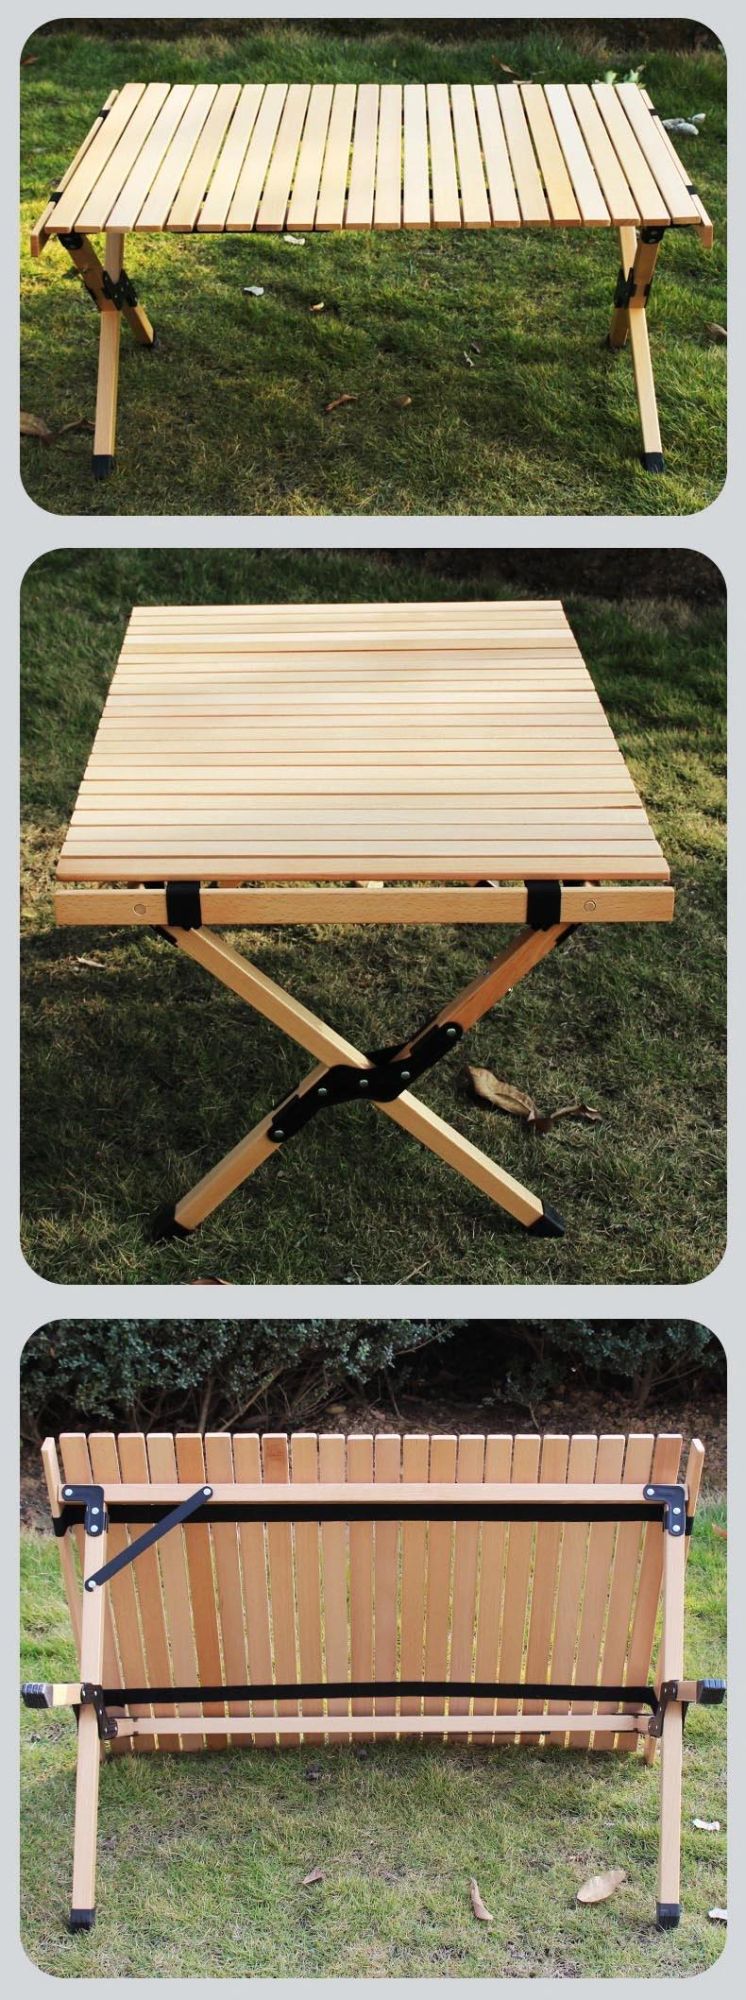 Outdoor Portable Foldable Korea BBQ Wooden Egg Roll Table Camping Table Wood Egg Roll Table